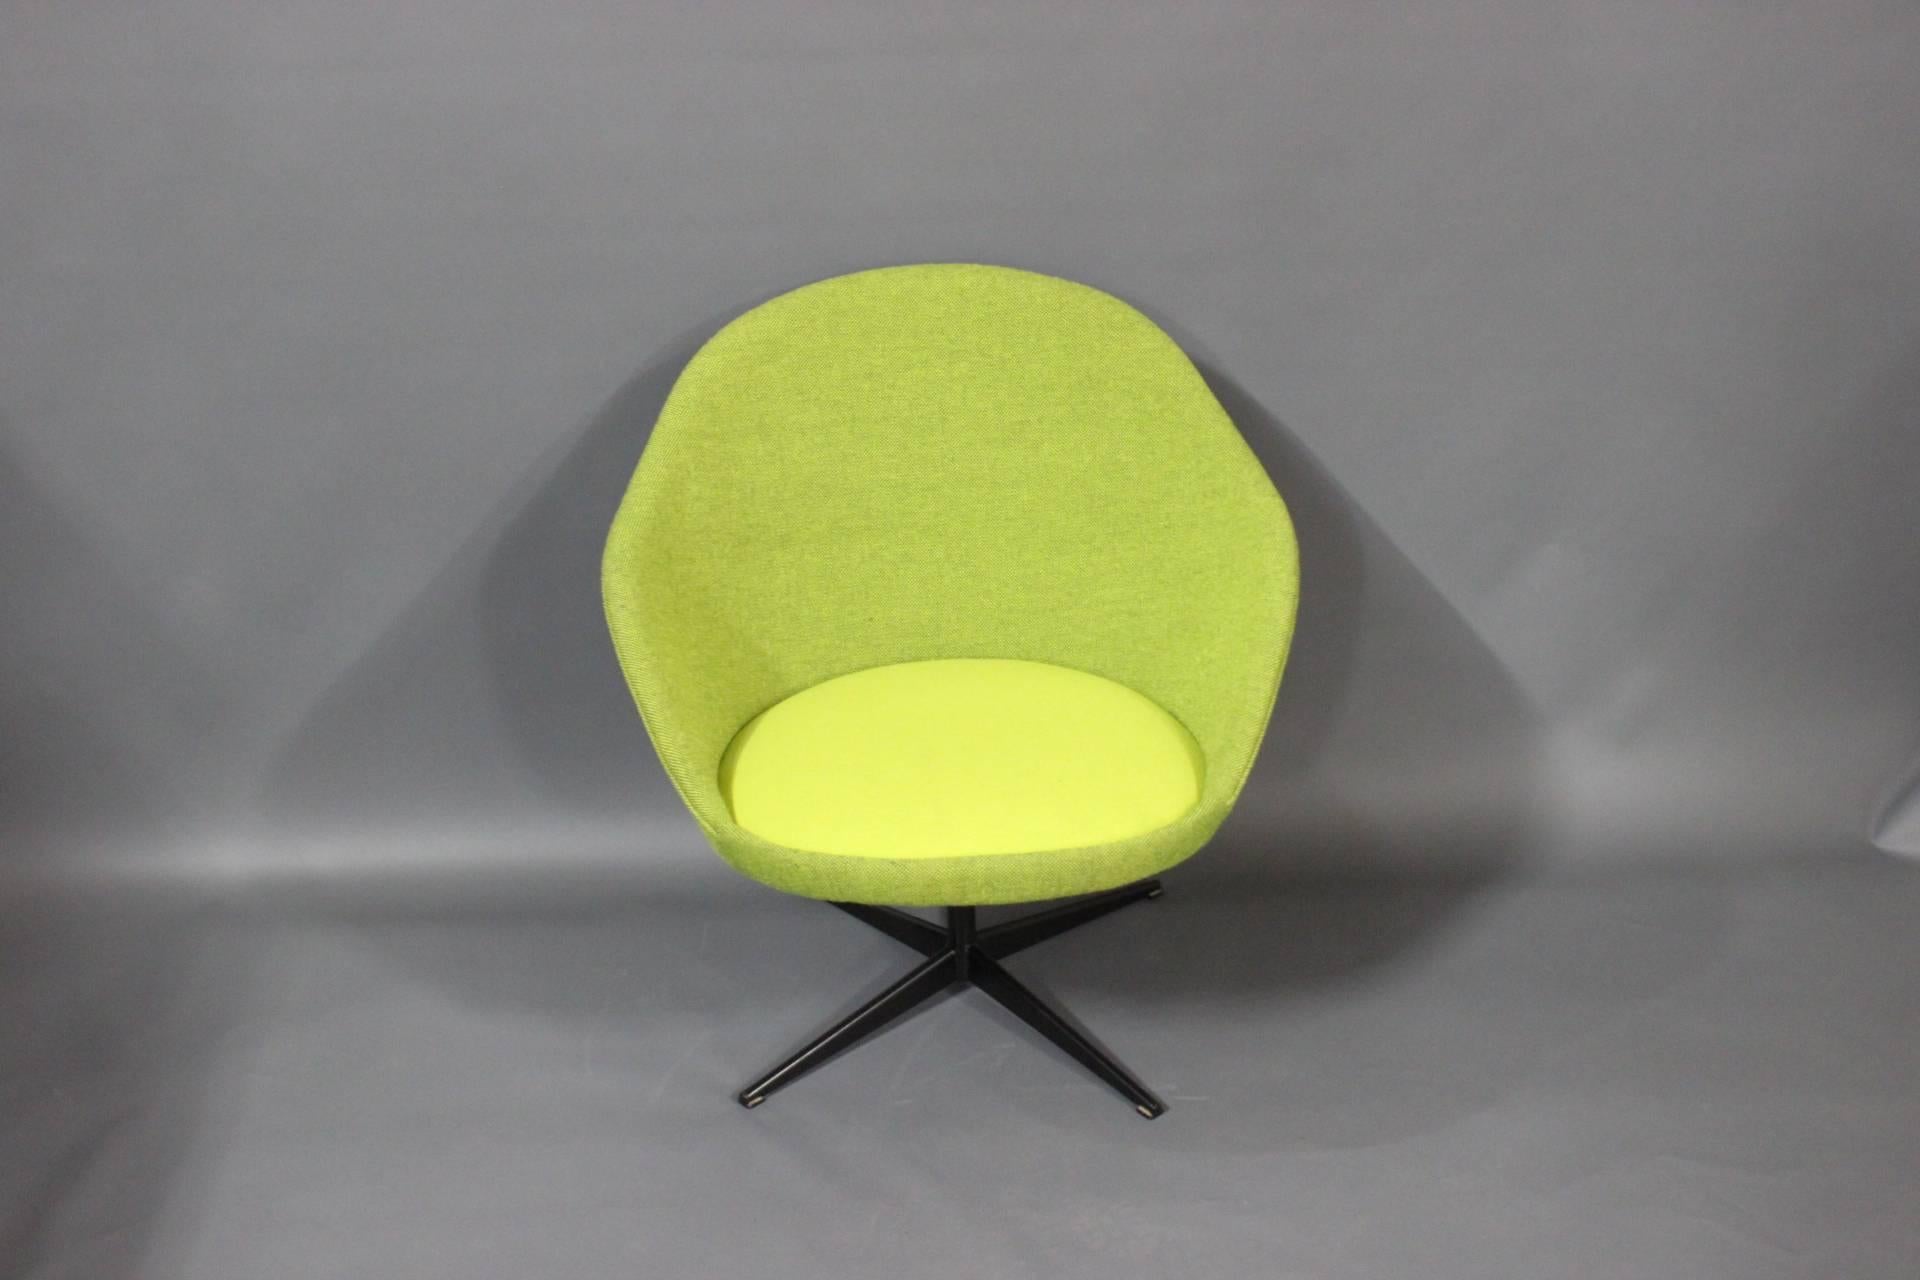 Découvrez le confort et le charme de ce fauteuil rétro des années 1960. Tapissé d'une magnifique laine Hallingdal verte, il ajoute non seulement une touche colorée à votre décor, mais offre également une expérience d'assise luxueuse et confortable.